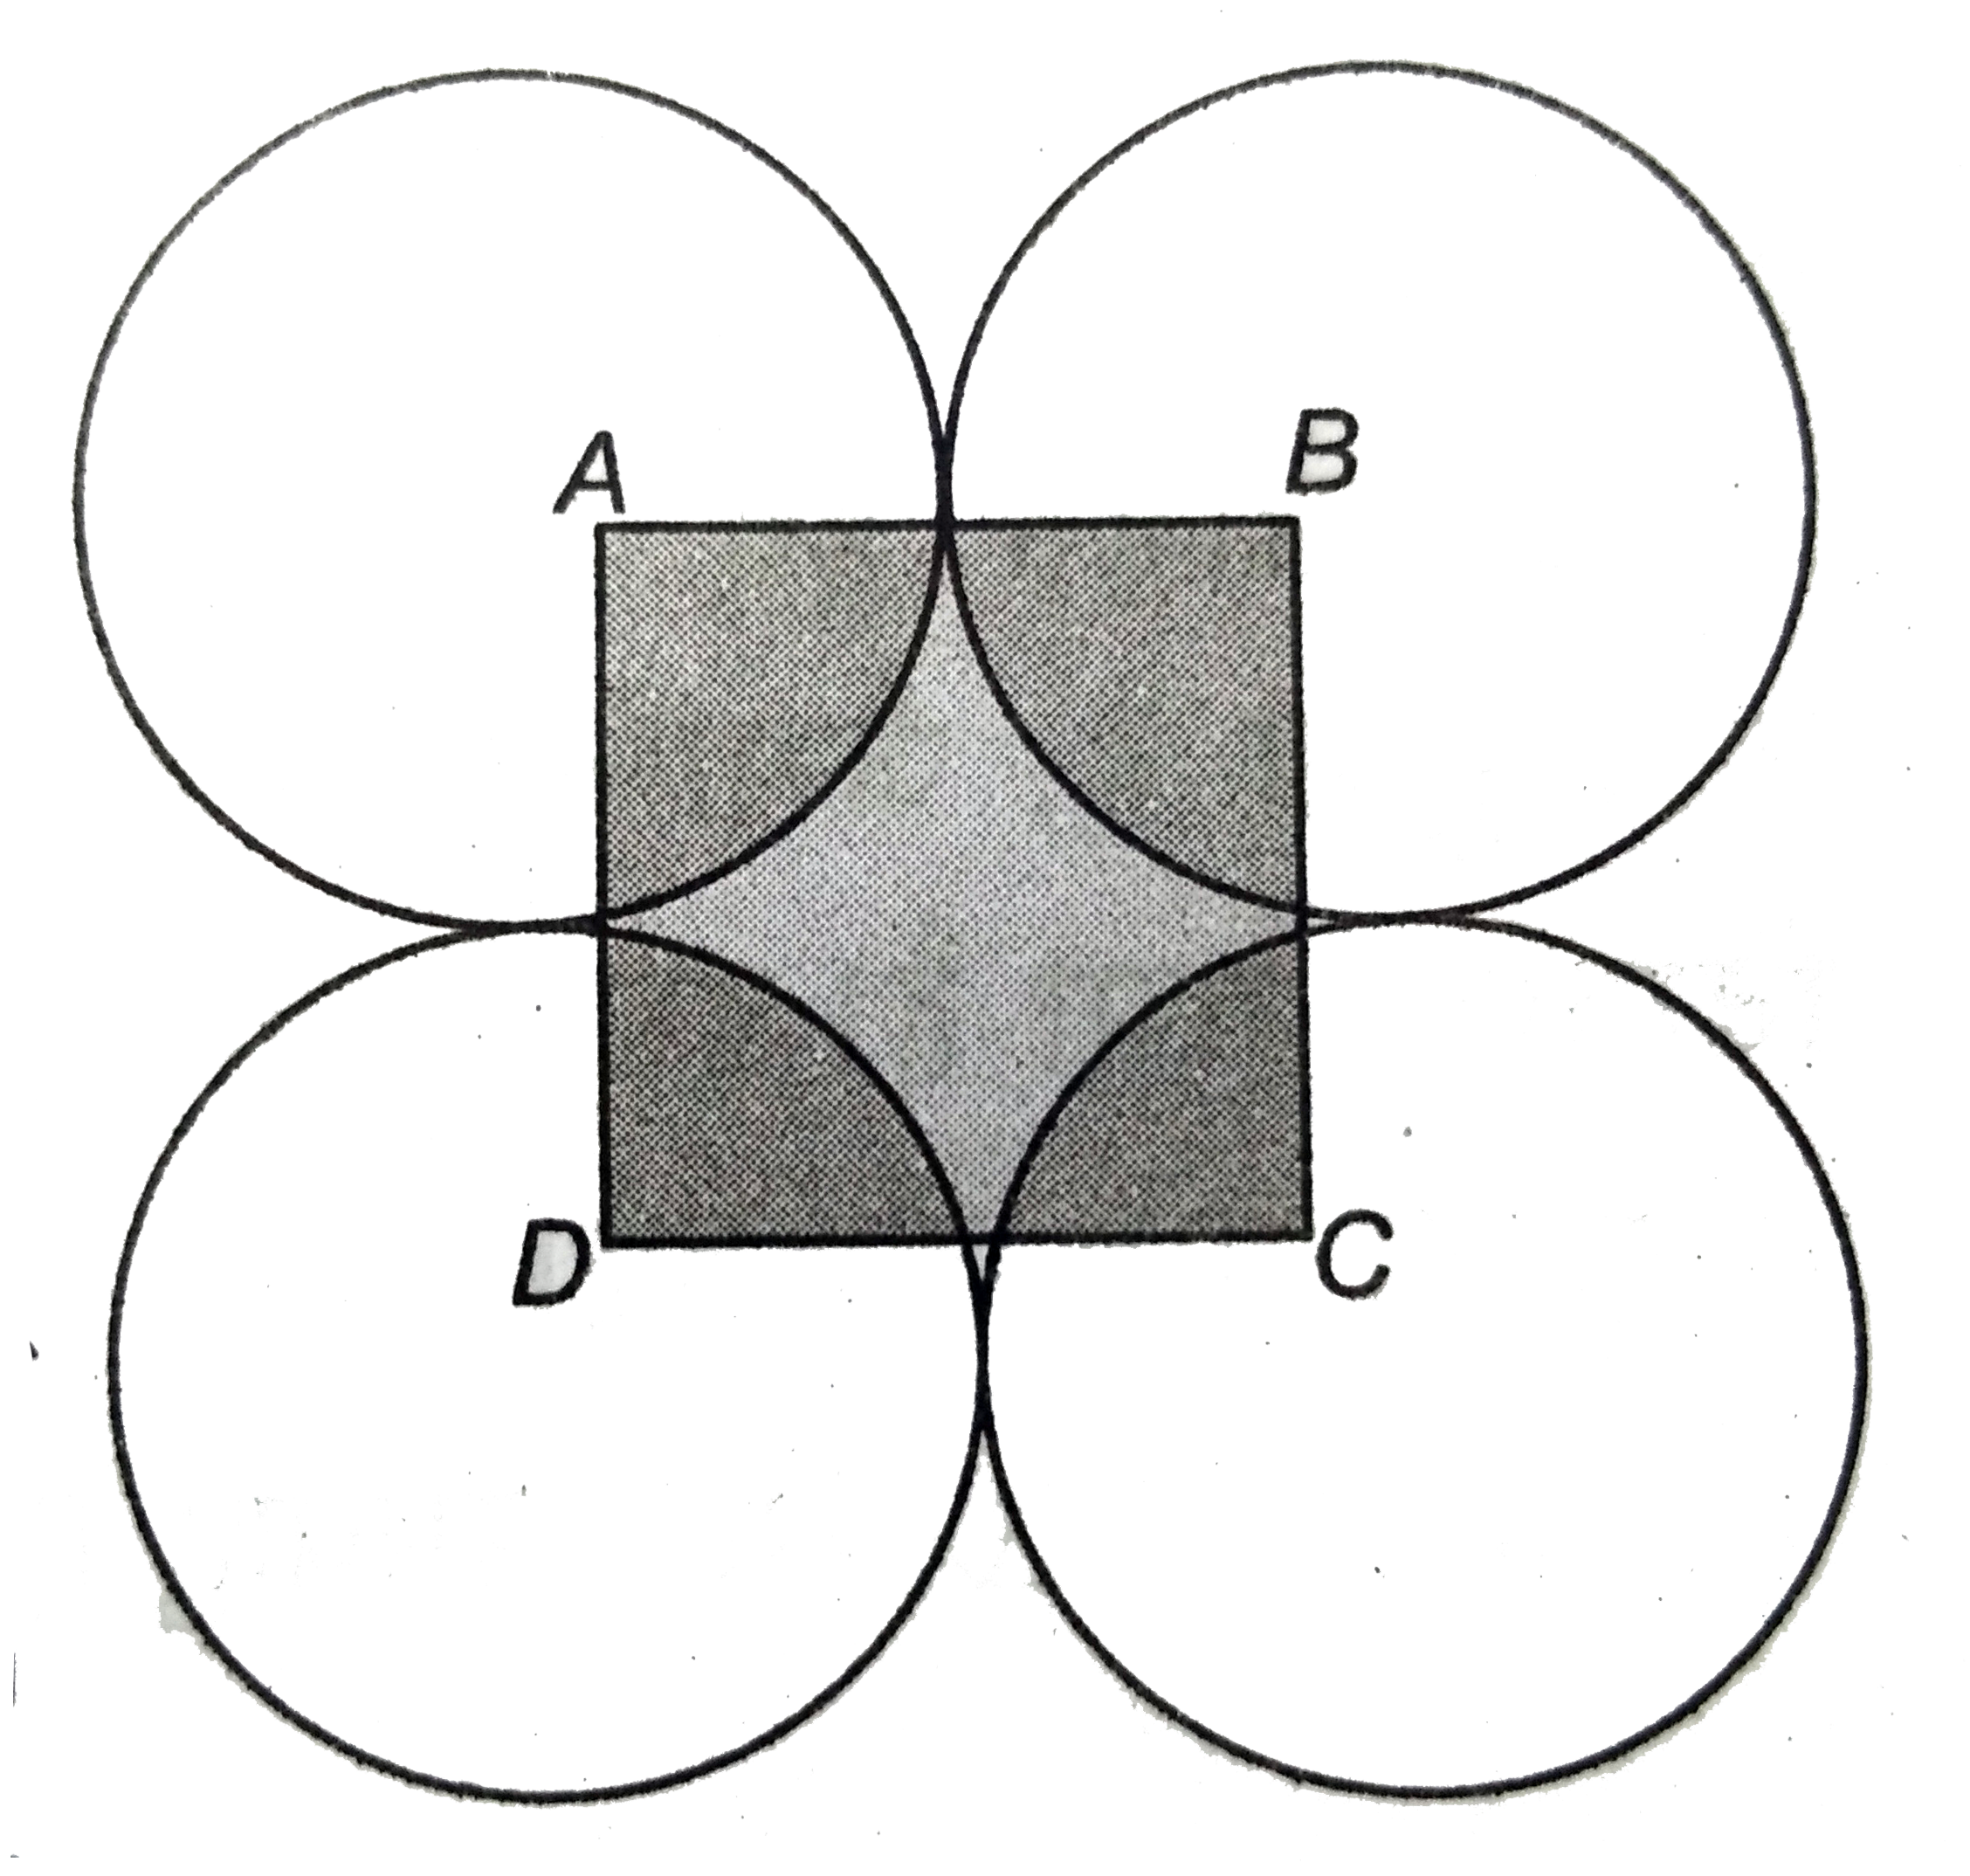 आकृति में , ABCD  भुजा  14  सेमी  वाला  एक वर्ग  है  A , B , C ,  और D  को केंद्र  मानकर ,  चार  वृत्त  इस प्रकार खींचे  गए है कि प्रत्येक  वृत्त  तीन शेष  वृत्तों में से  दो  वृत्तों को  बाह्य रूप से स्पर्श करता है । छायांकित  भाग का क्षेत्रफल  ज्ञात कीजिए ।